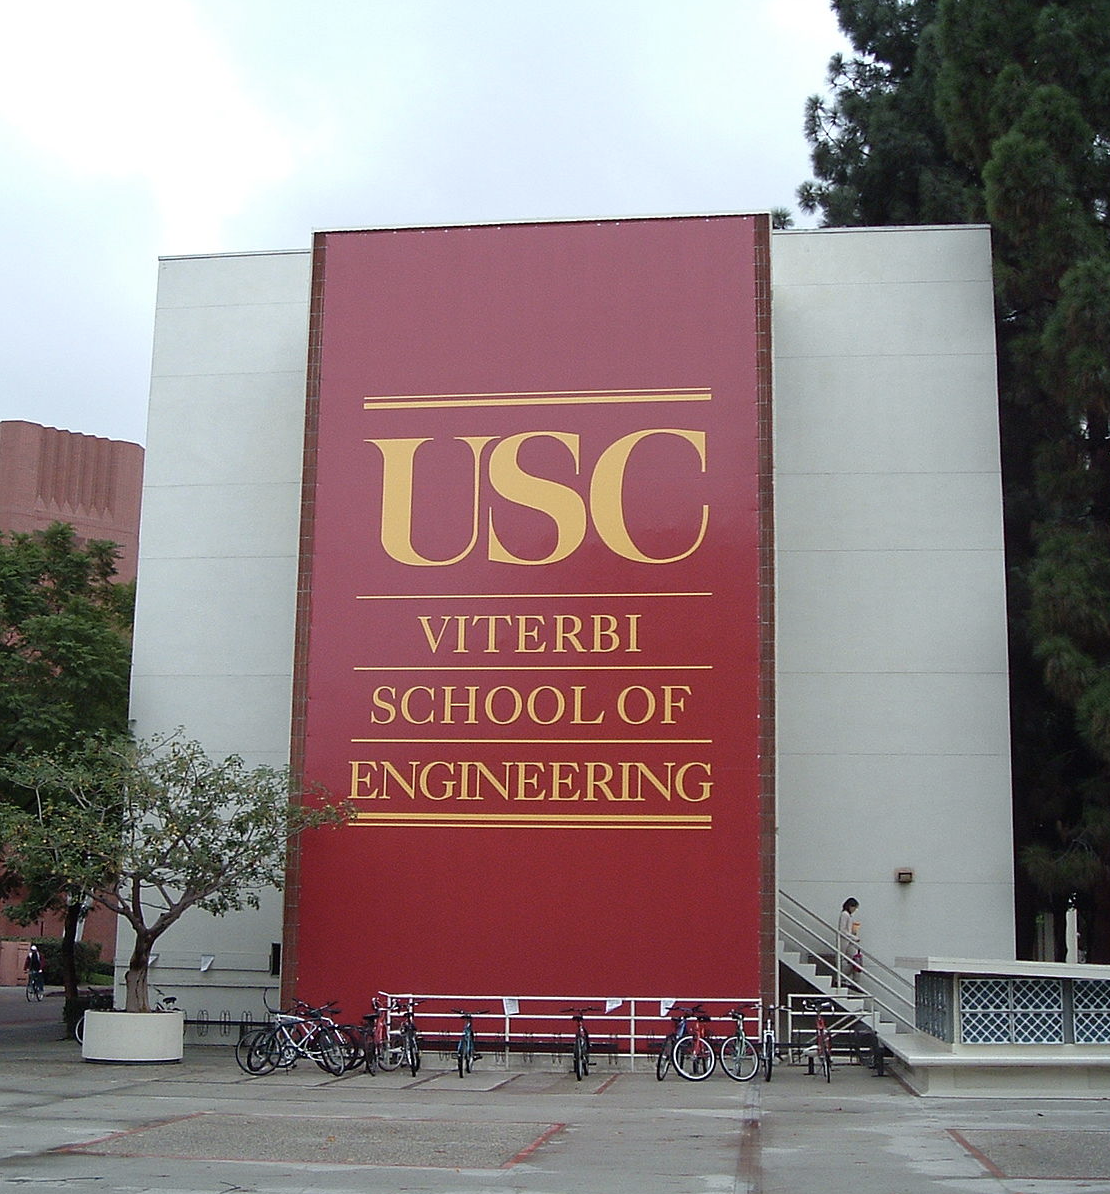 USC Viterbi